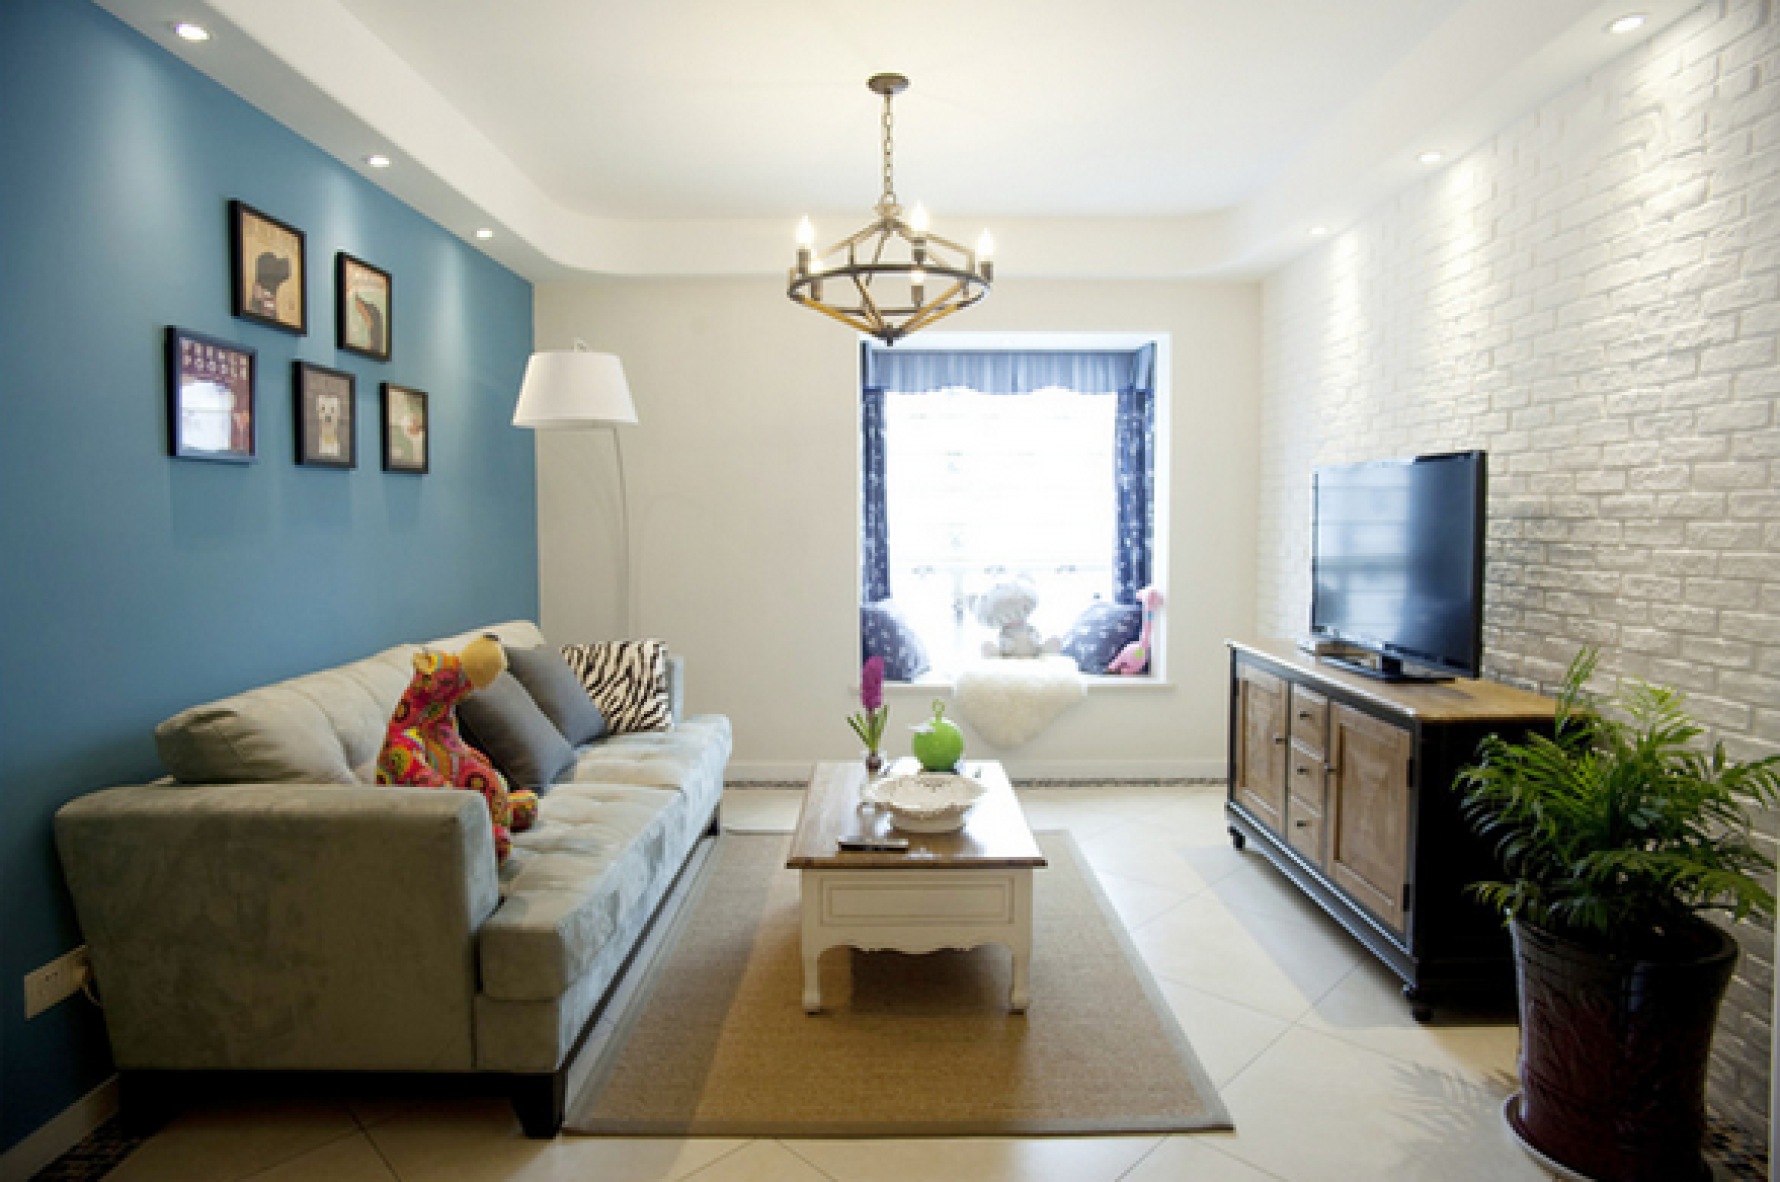 蓝色妖姬 - 地中海风格两室两厅装修效果图 - 哈妹设计效果图 - 每平每屋·设计家